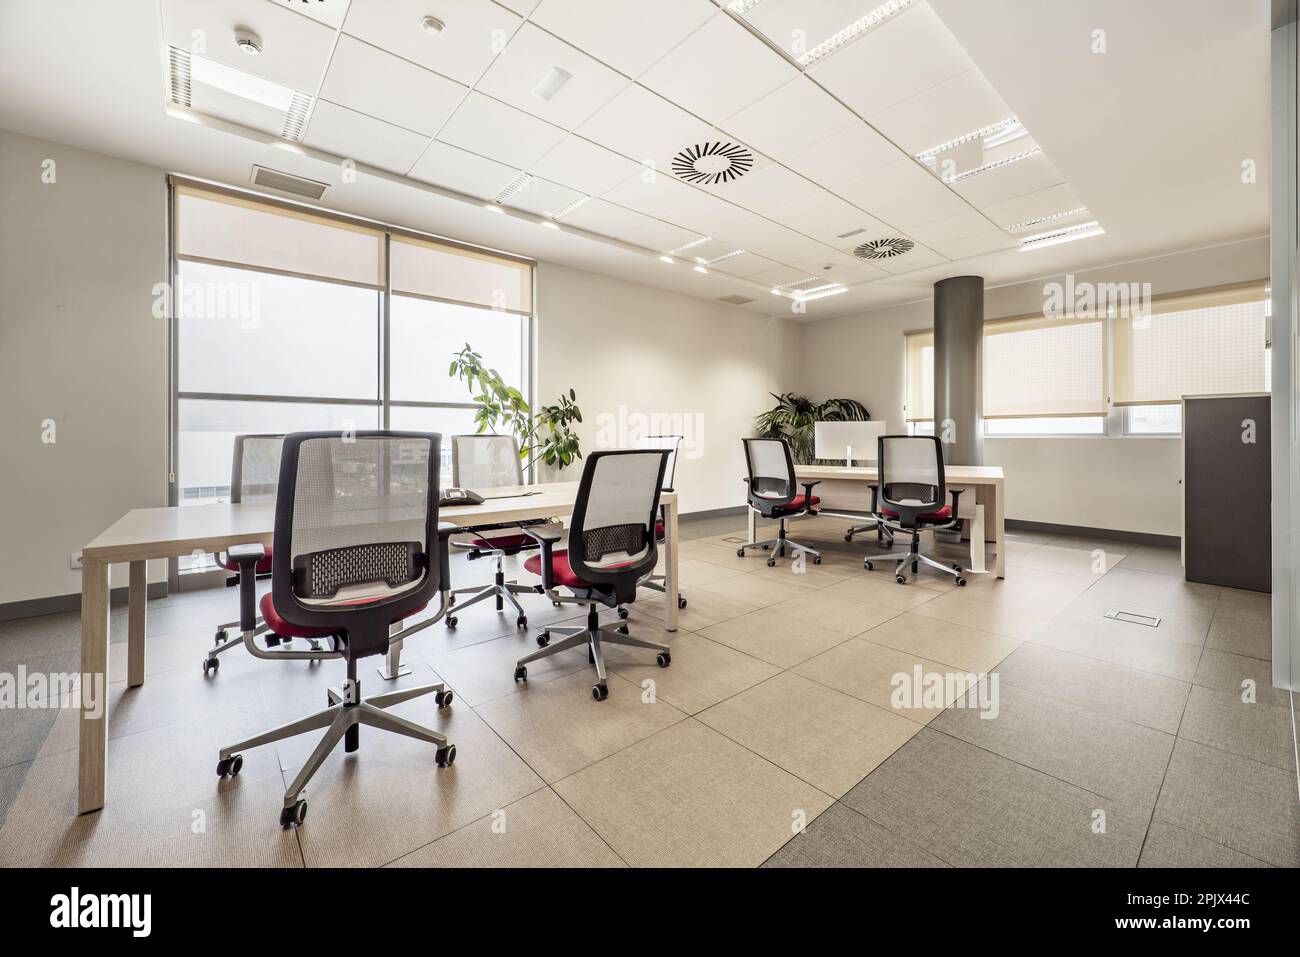 Ufficio professionale con grandi finestre, soffitti tecnici, tavoli da riunione in legno e sedie girevoli identiche Foto Stock